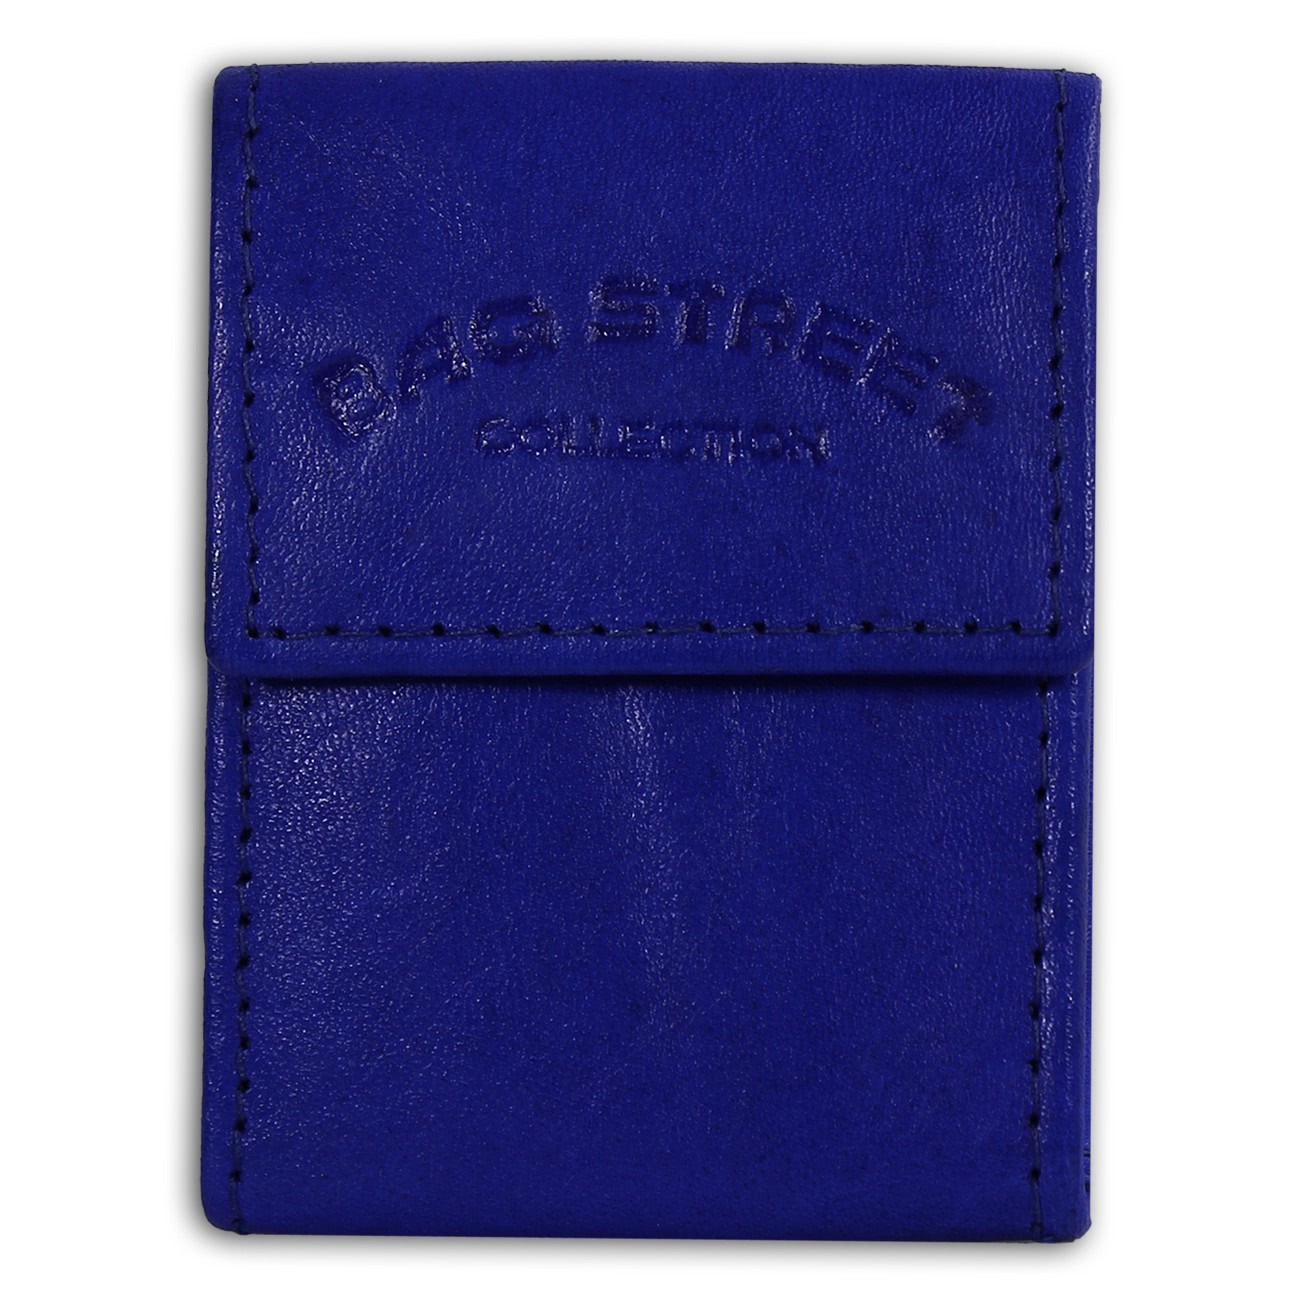 Bag Street kompakte Minibörse echtes Leder Geldbörse Portemonnaie blau OPJ801B